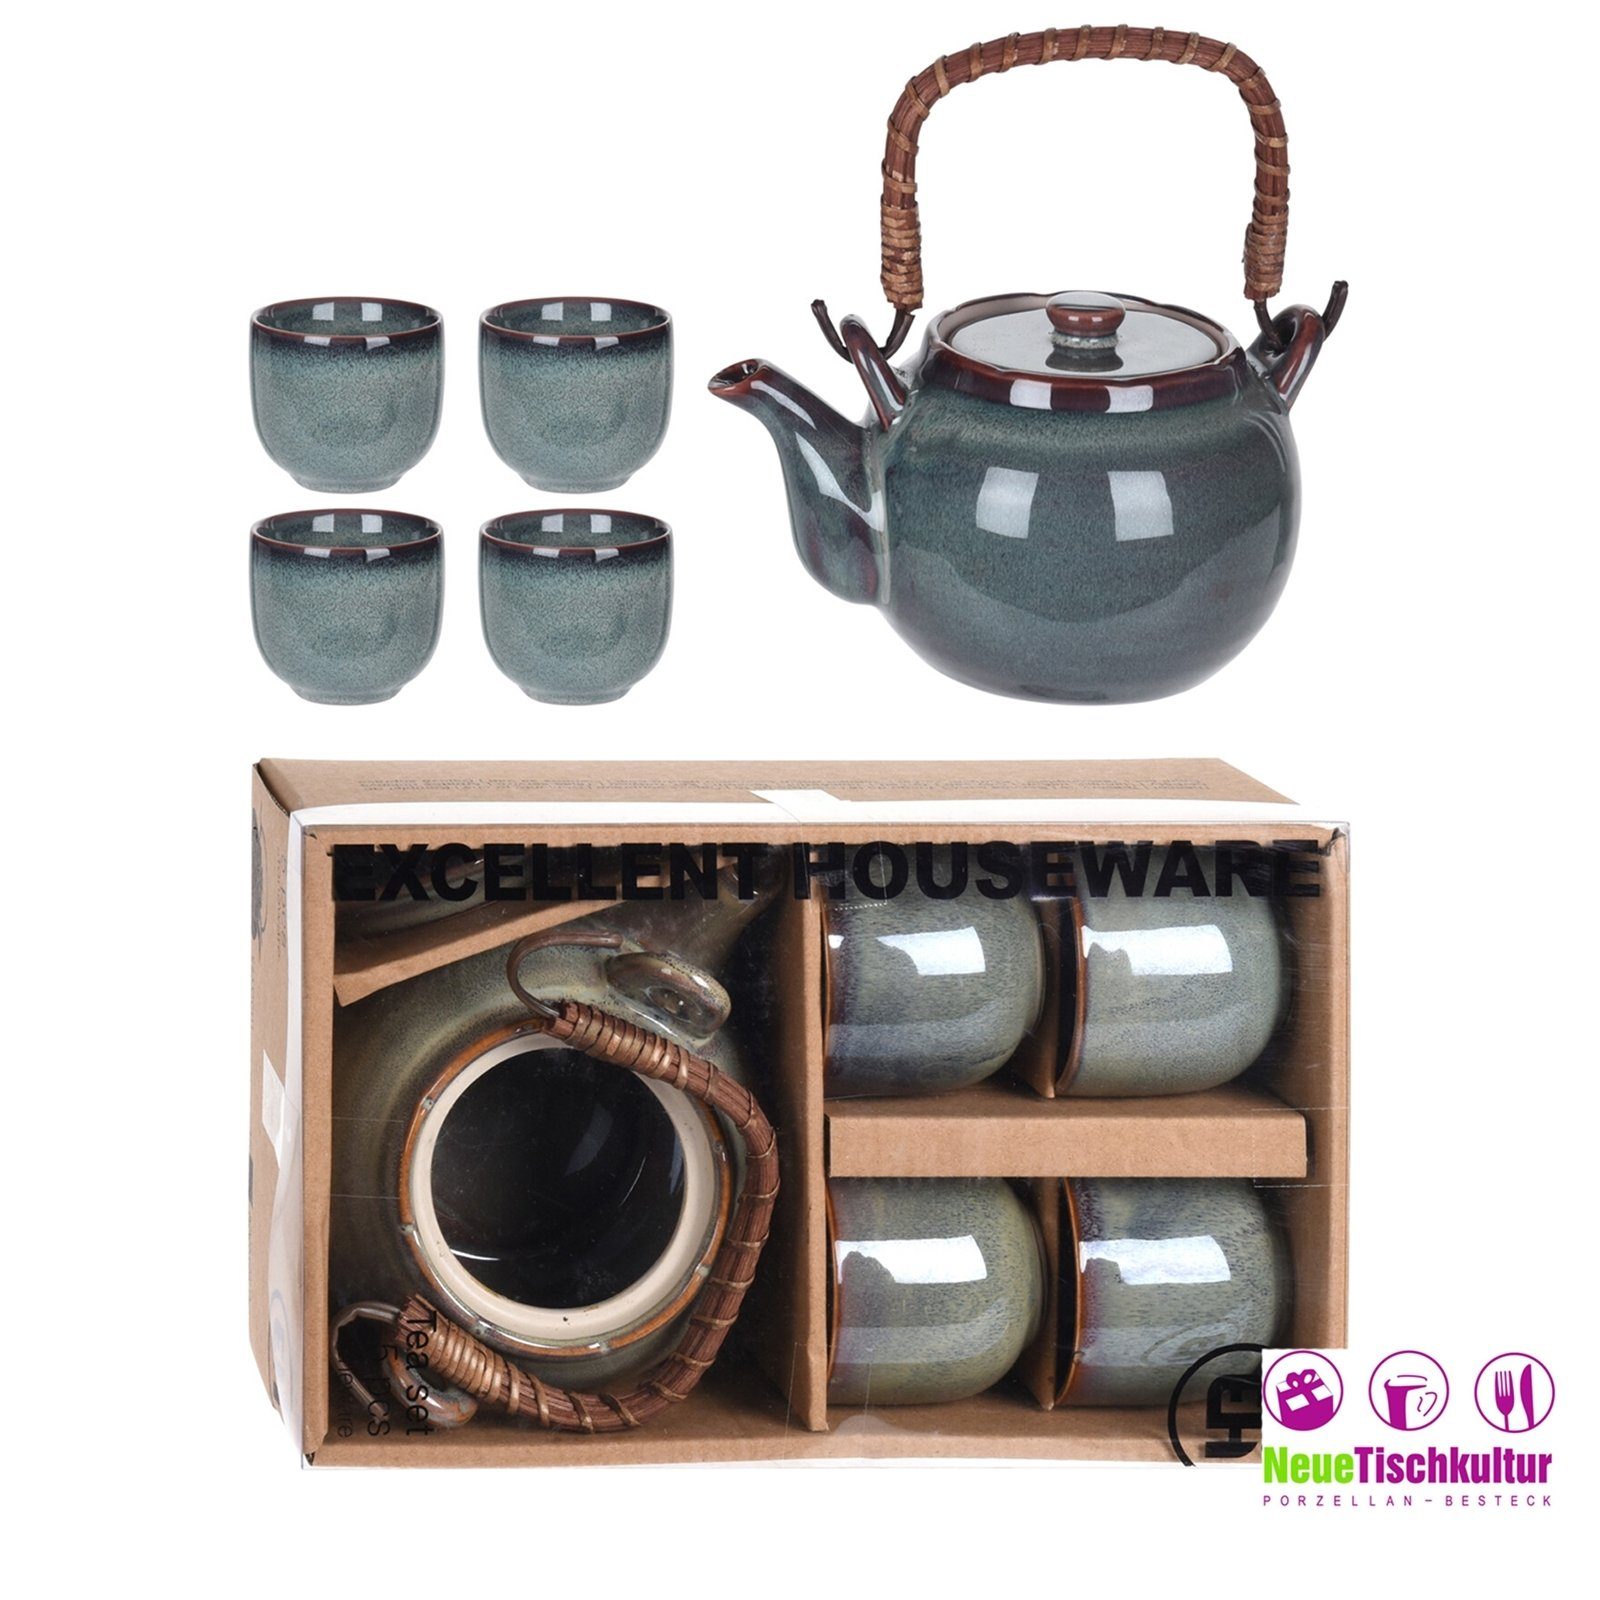 4 Teekanne Keramik Neuetischkultur Teekanne mit Becher